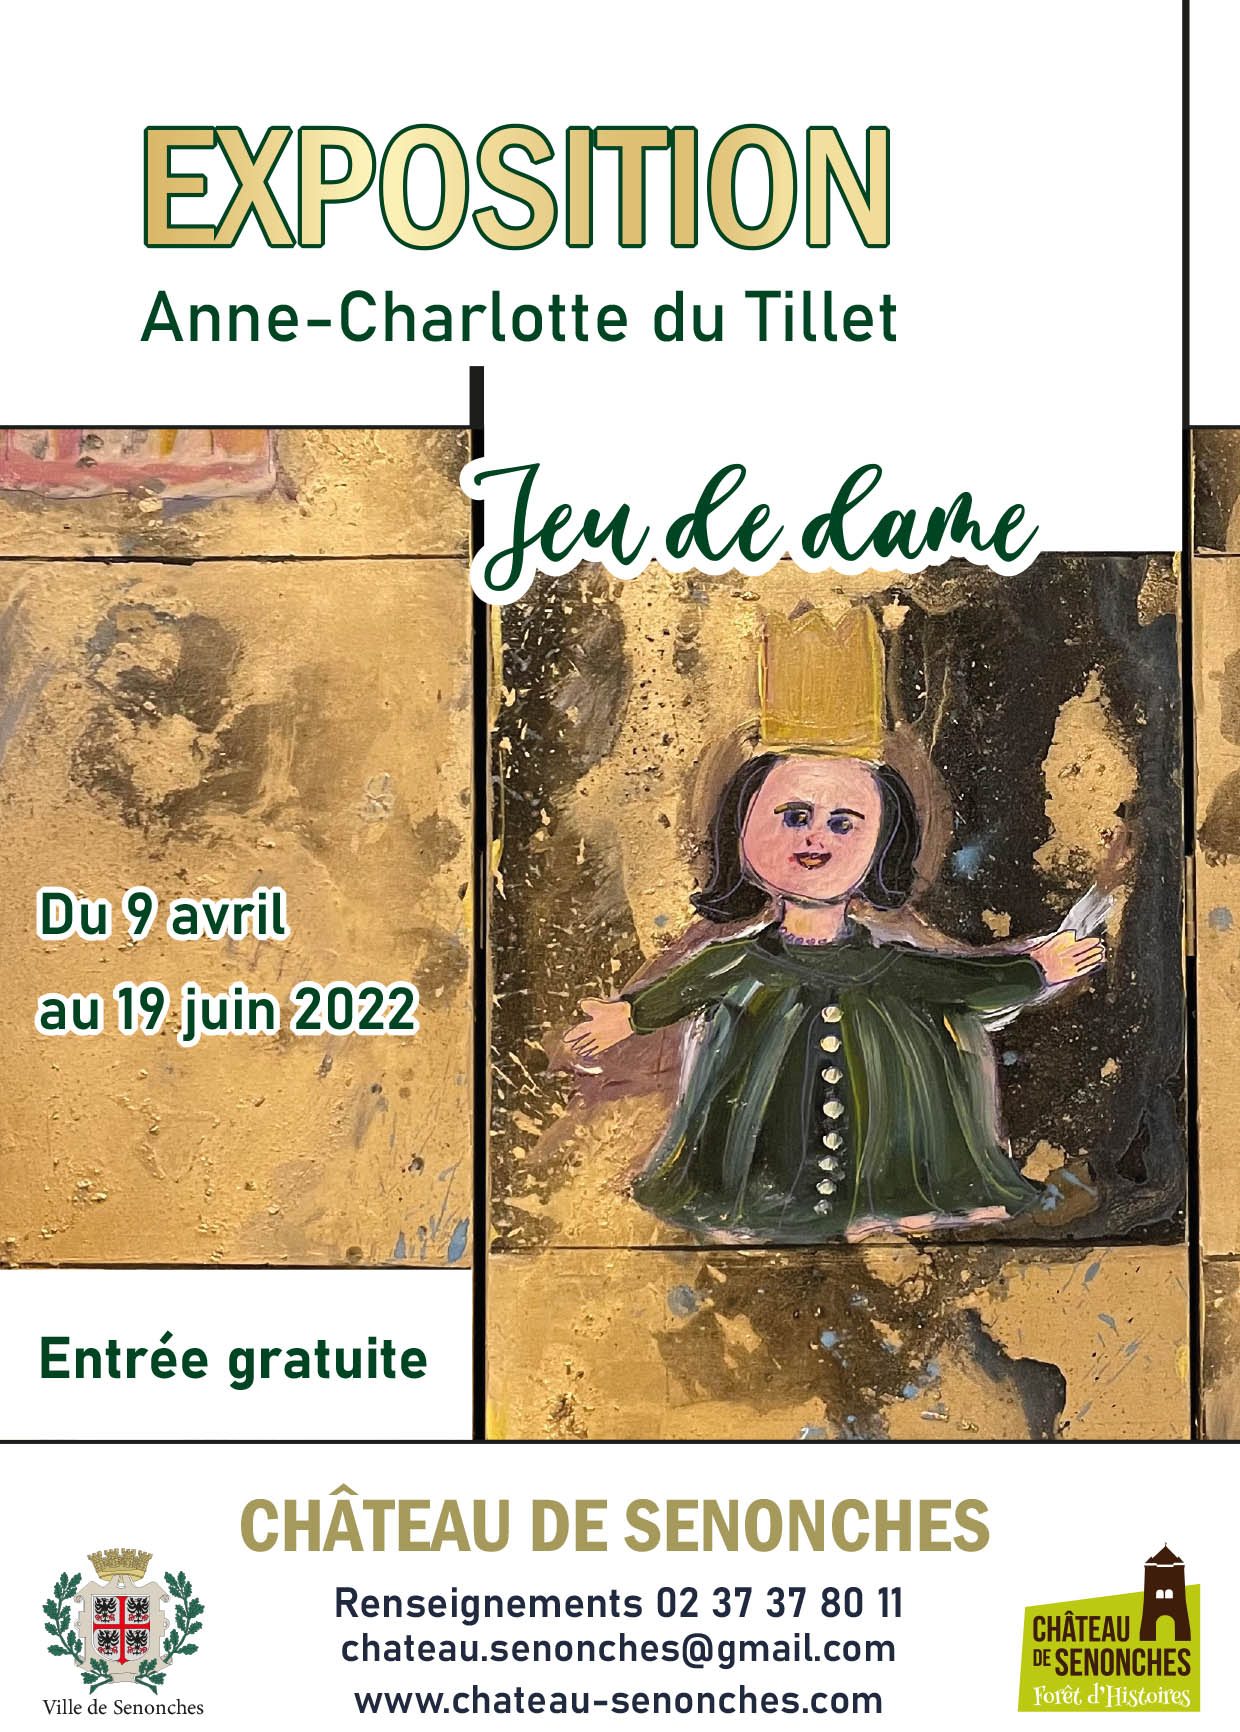 Exposition « Jeu de dame ». Œuvres d’Anne-Charlotte du Tillet